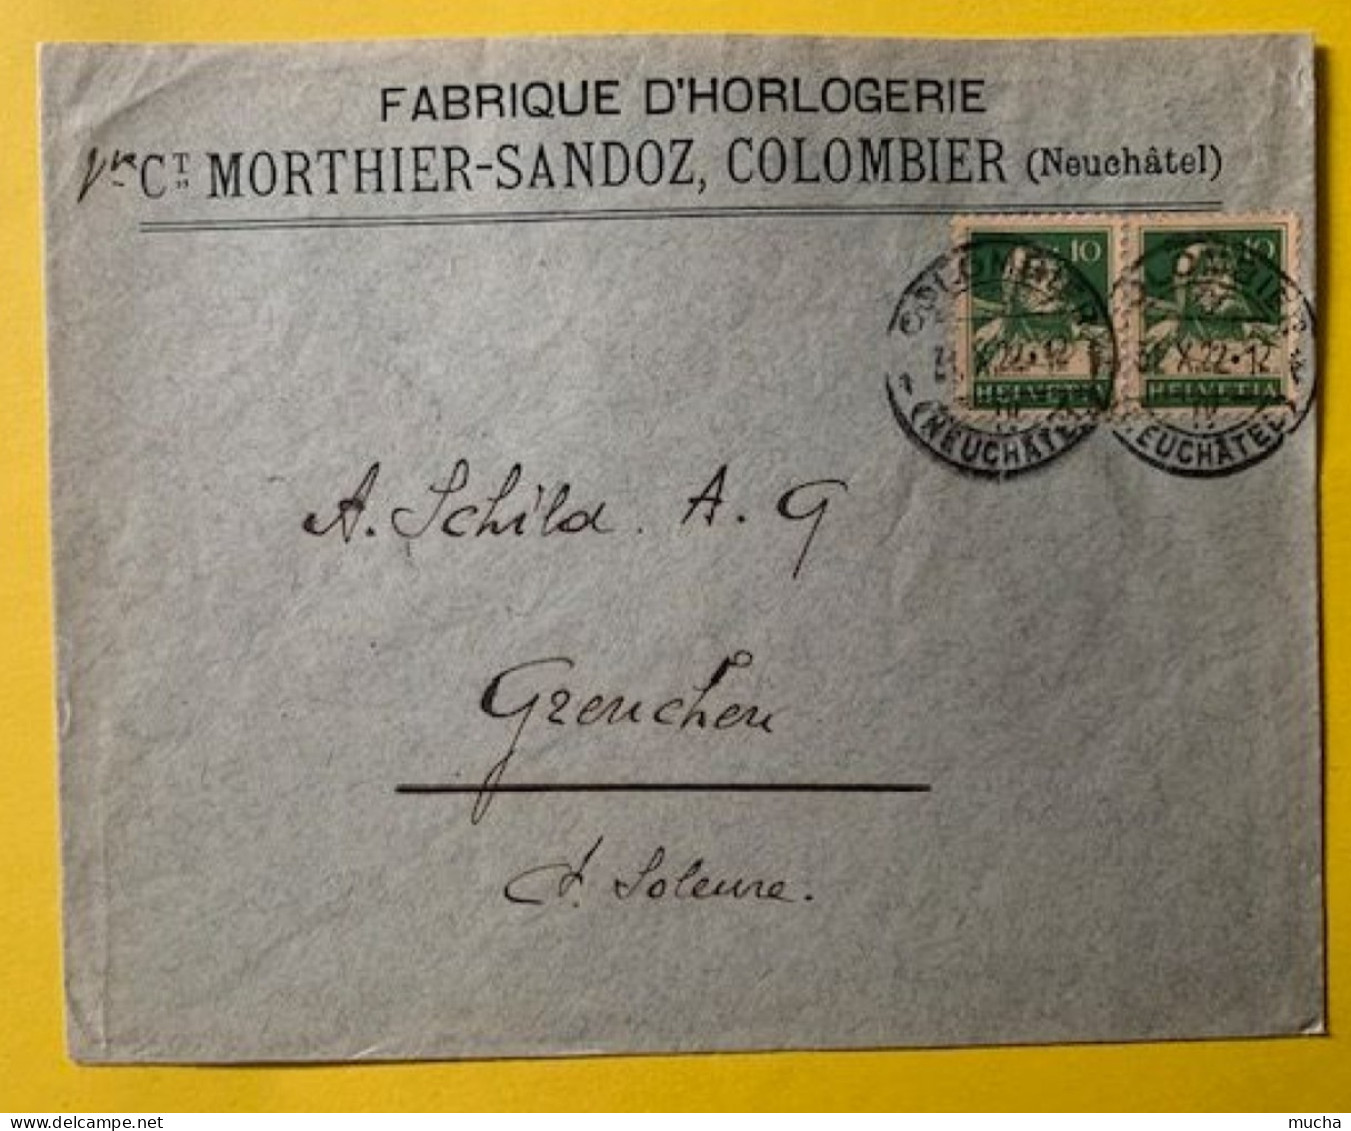 70030 - Suisse Lettre Fabrique D'Horlogerie Vve Morthier-Sandoz Colombier 31.10.1922 - Orologeria